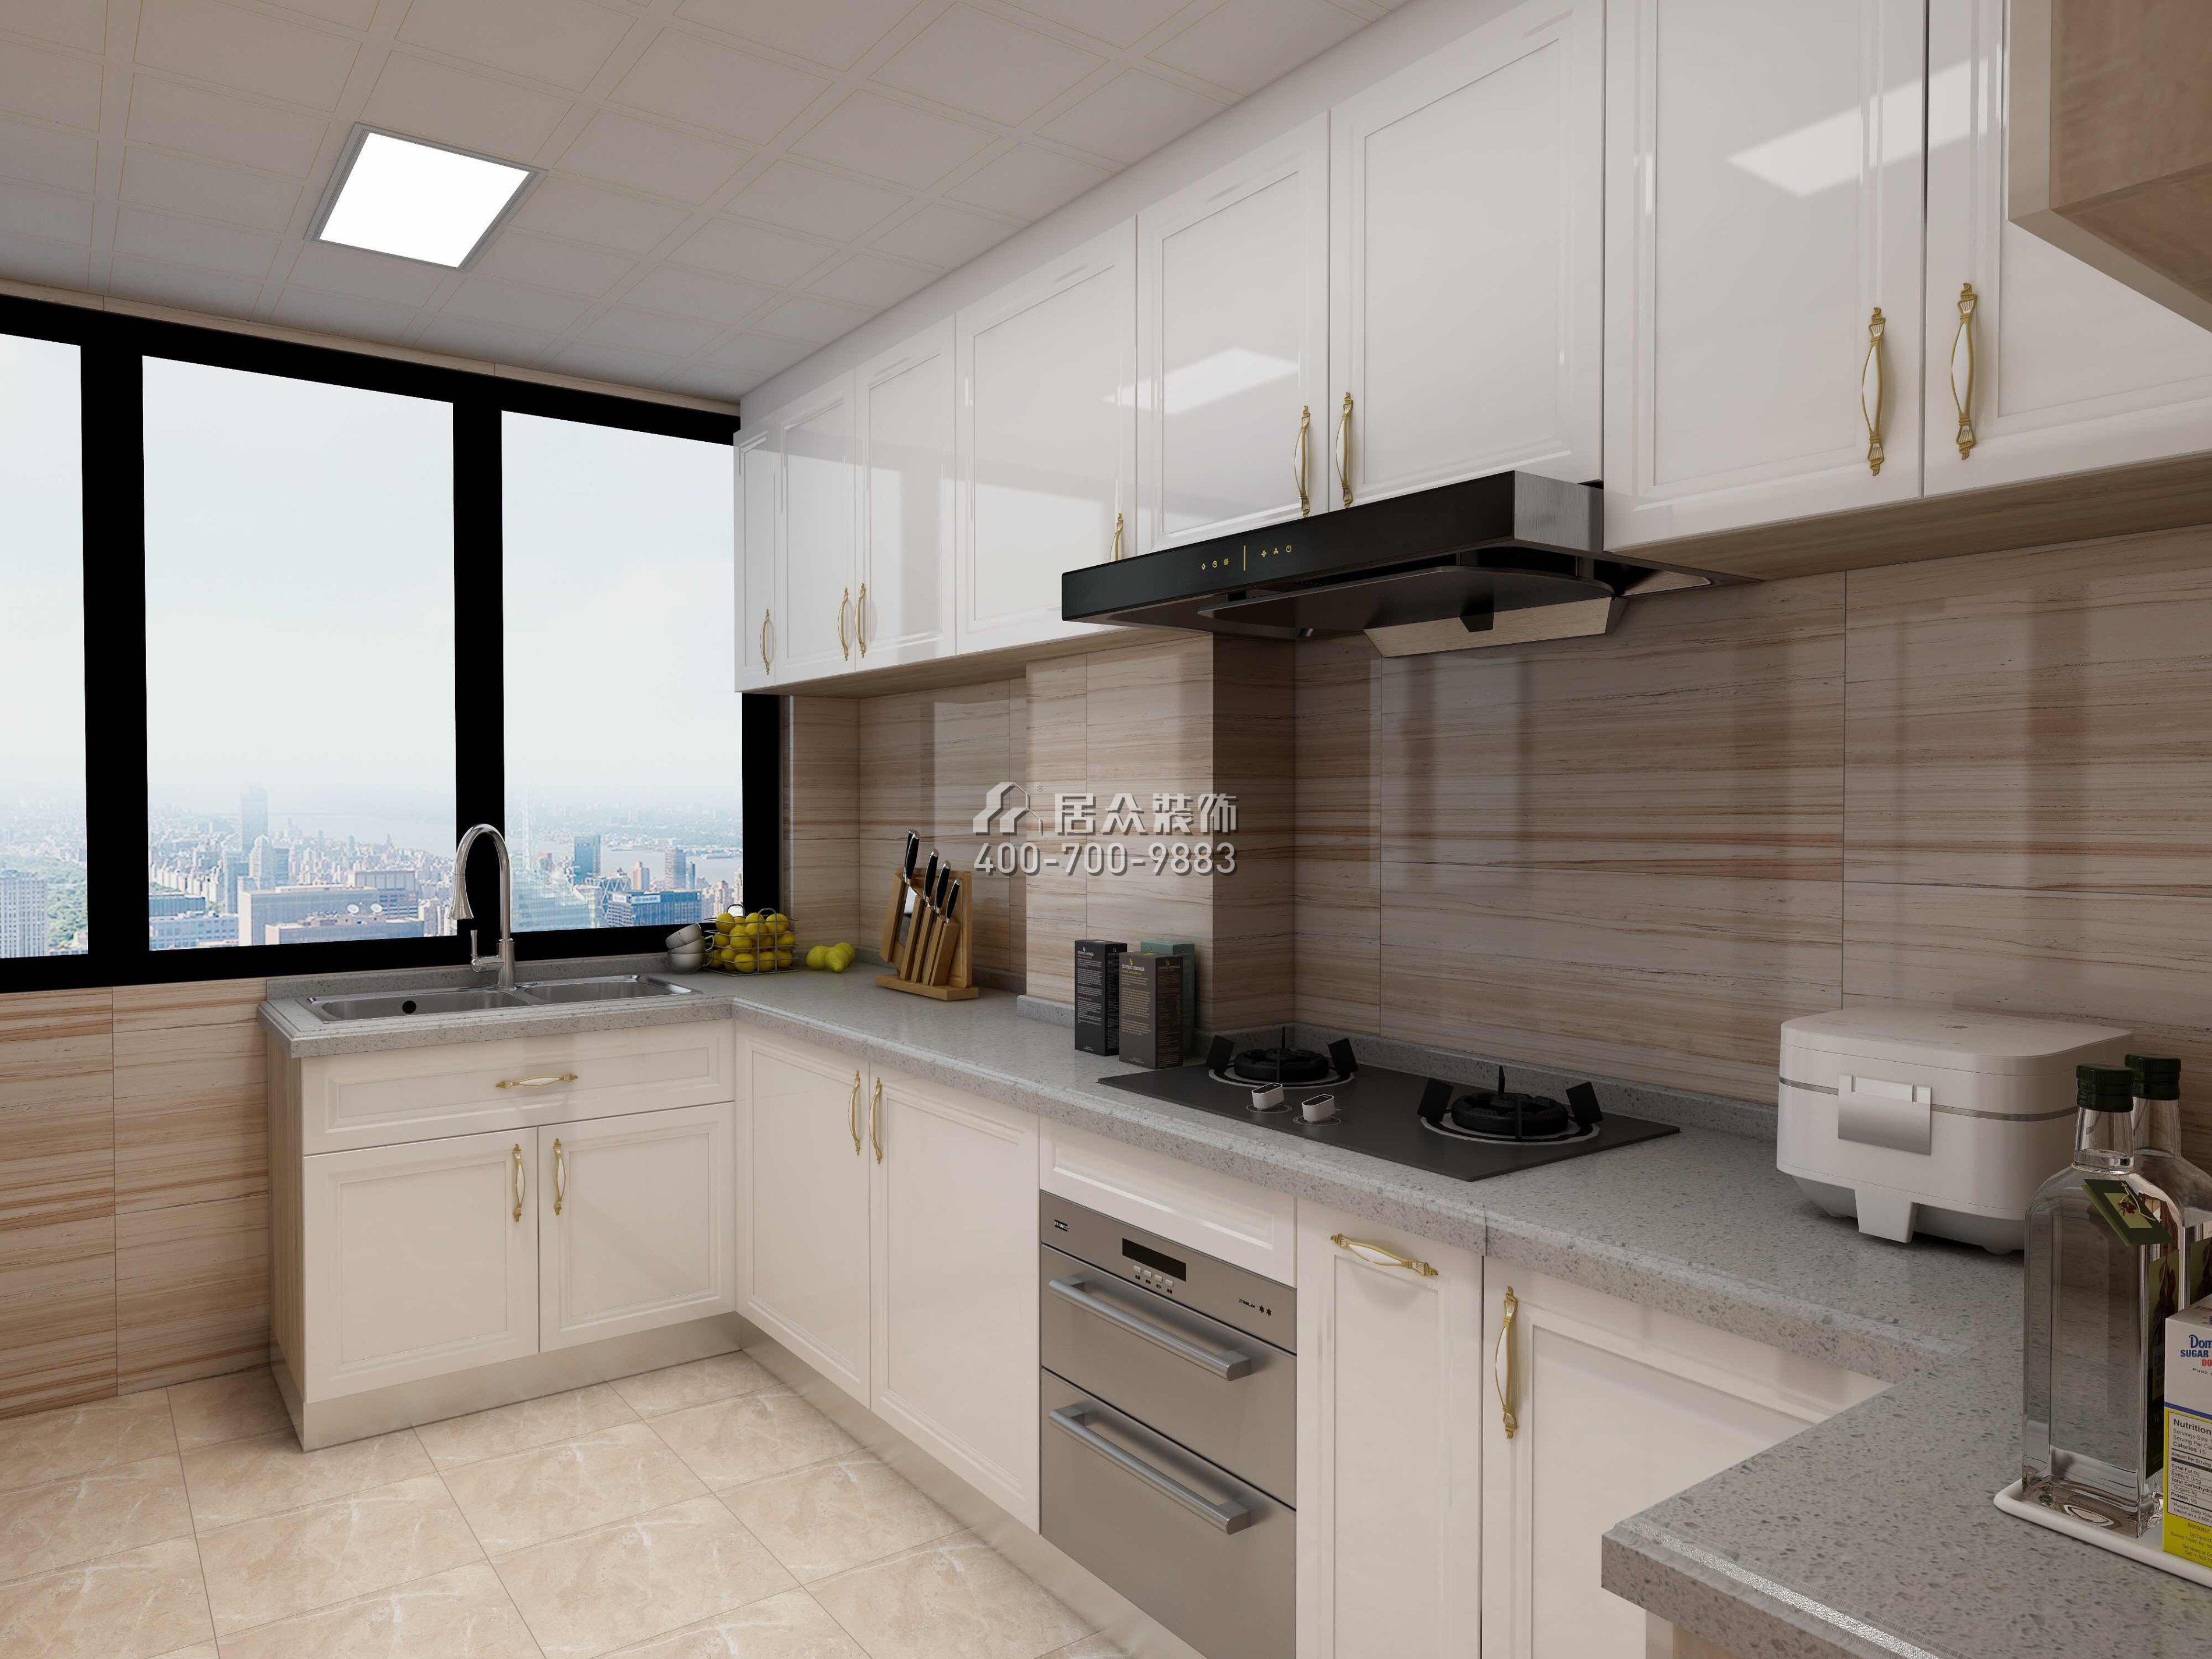 星河丹堤128平方米现代简约风格平层户型厨房装修效果图